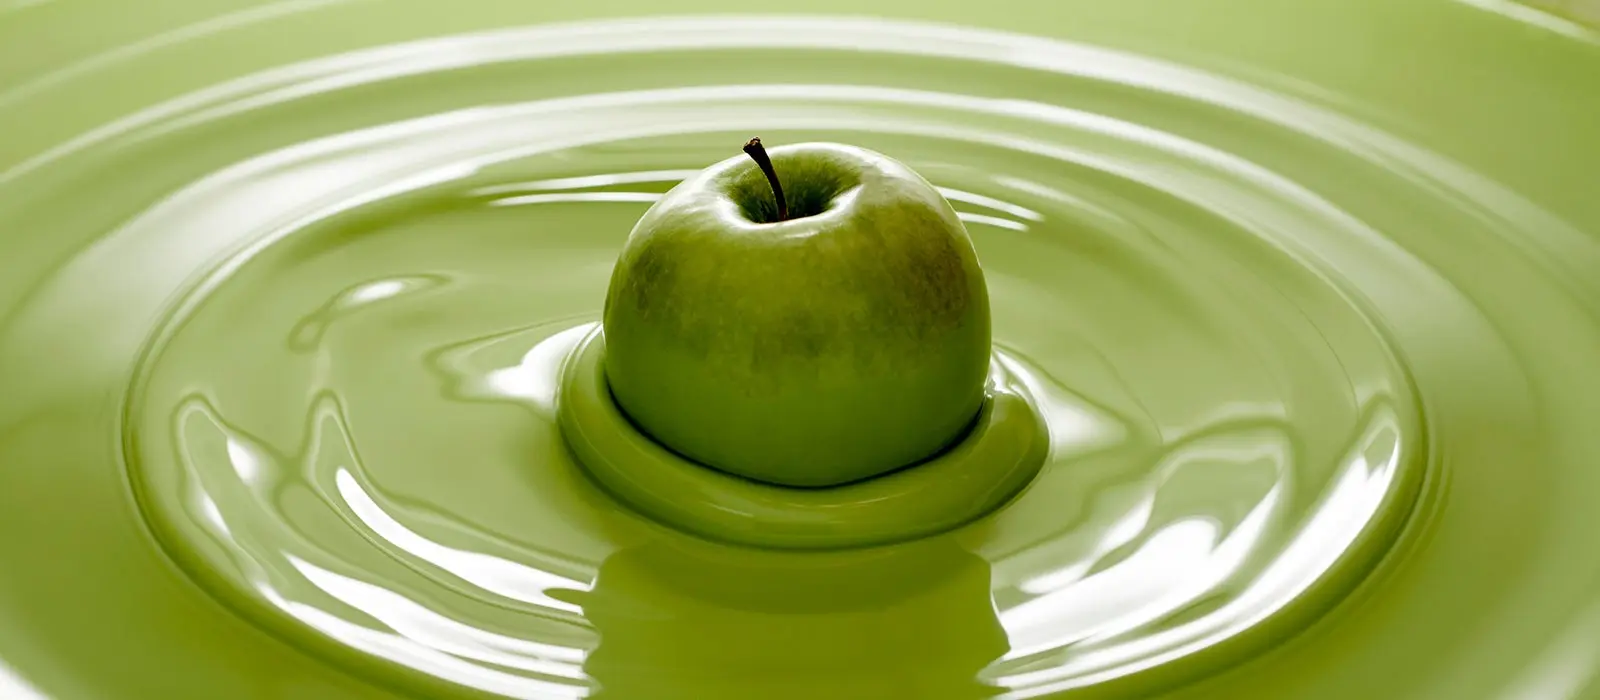 Fotografia de una manzana verde, naturaleza muerta